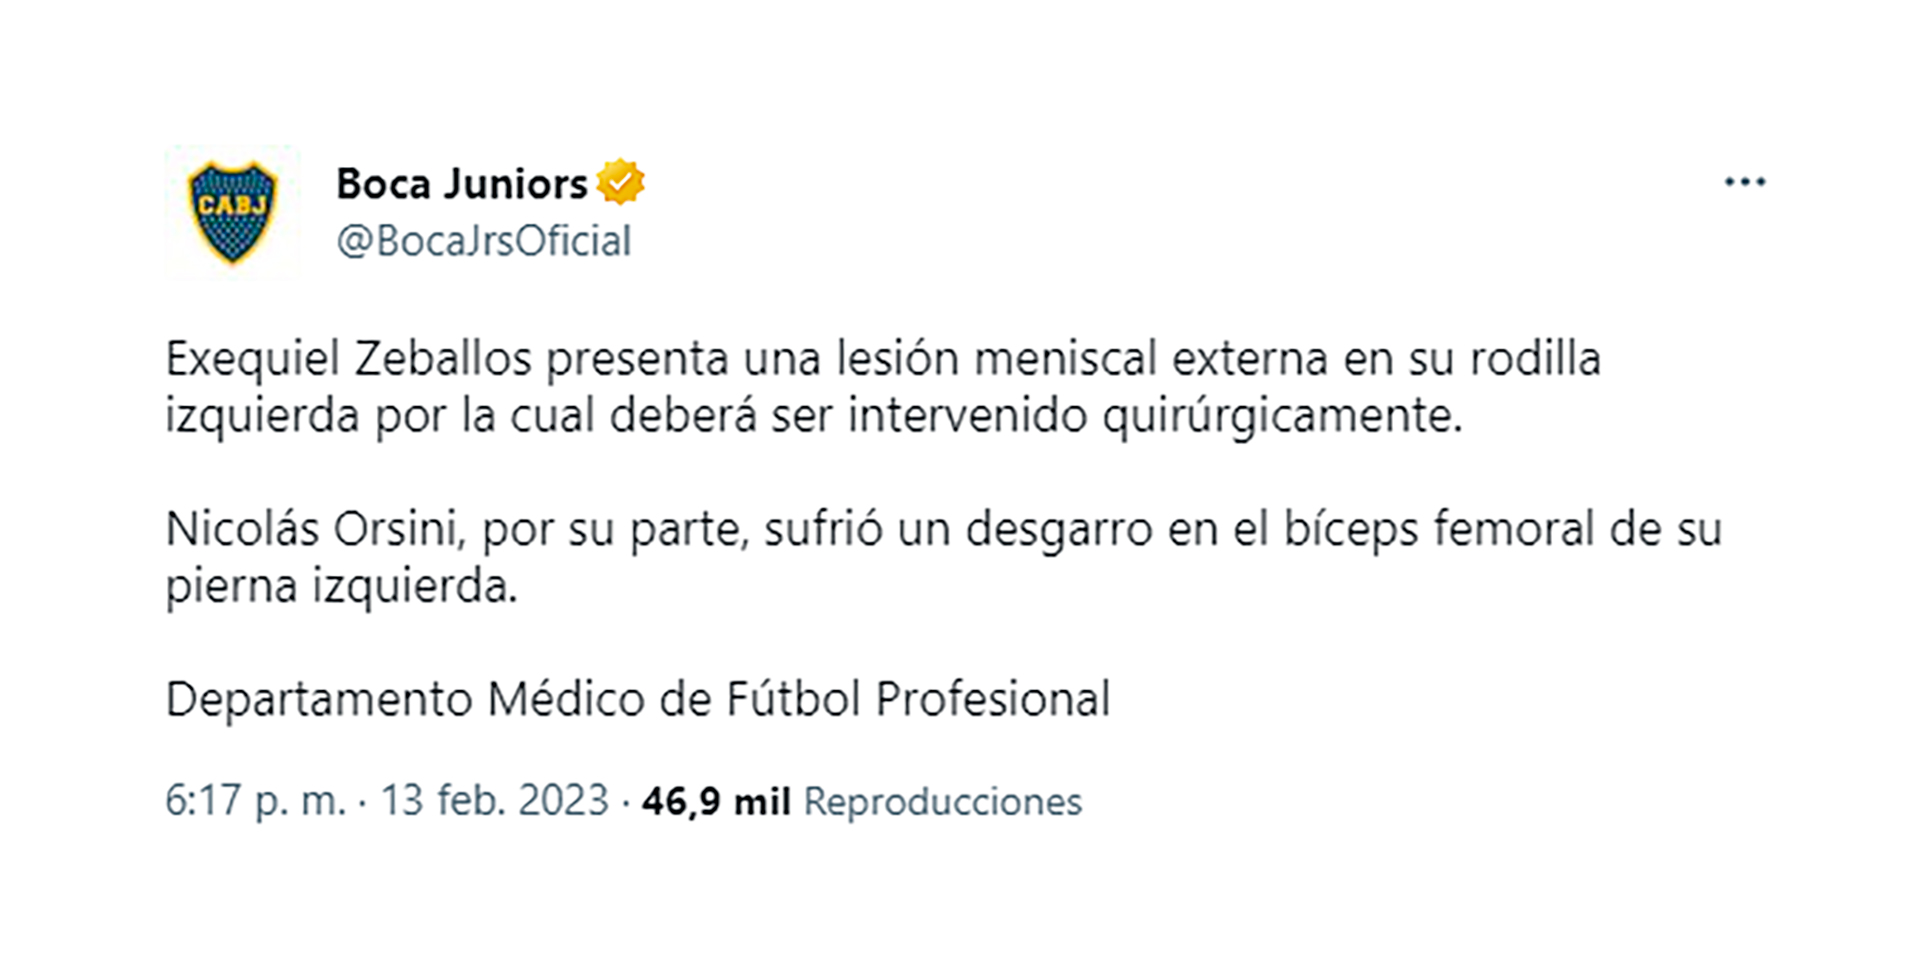 El comunicado oficial de Boca Juniors que confirma las lesiones de Nicolás Orsini y Exequiel Zeballos